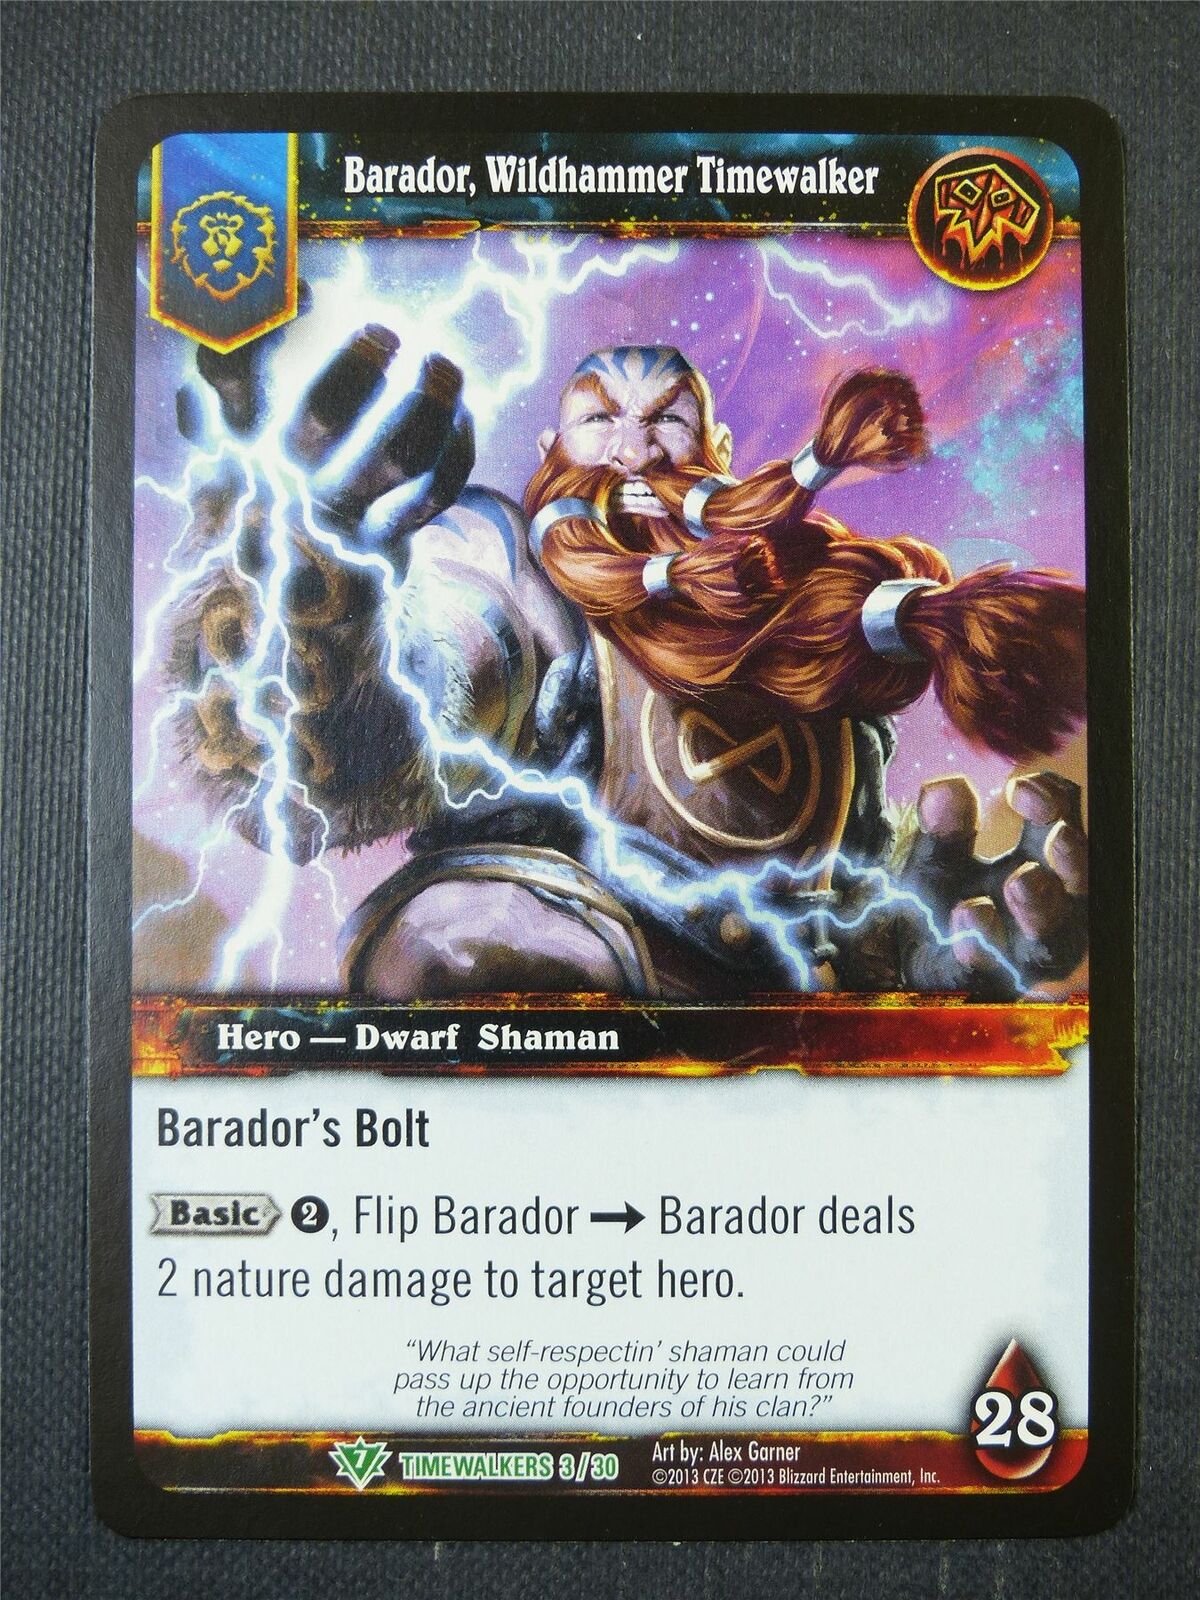 Barador Wildhammer Timewalker 3/30 - WoW Card #1AY